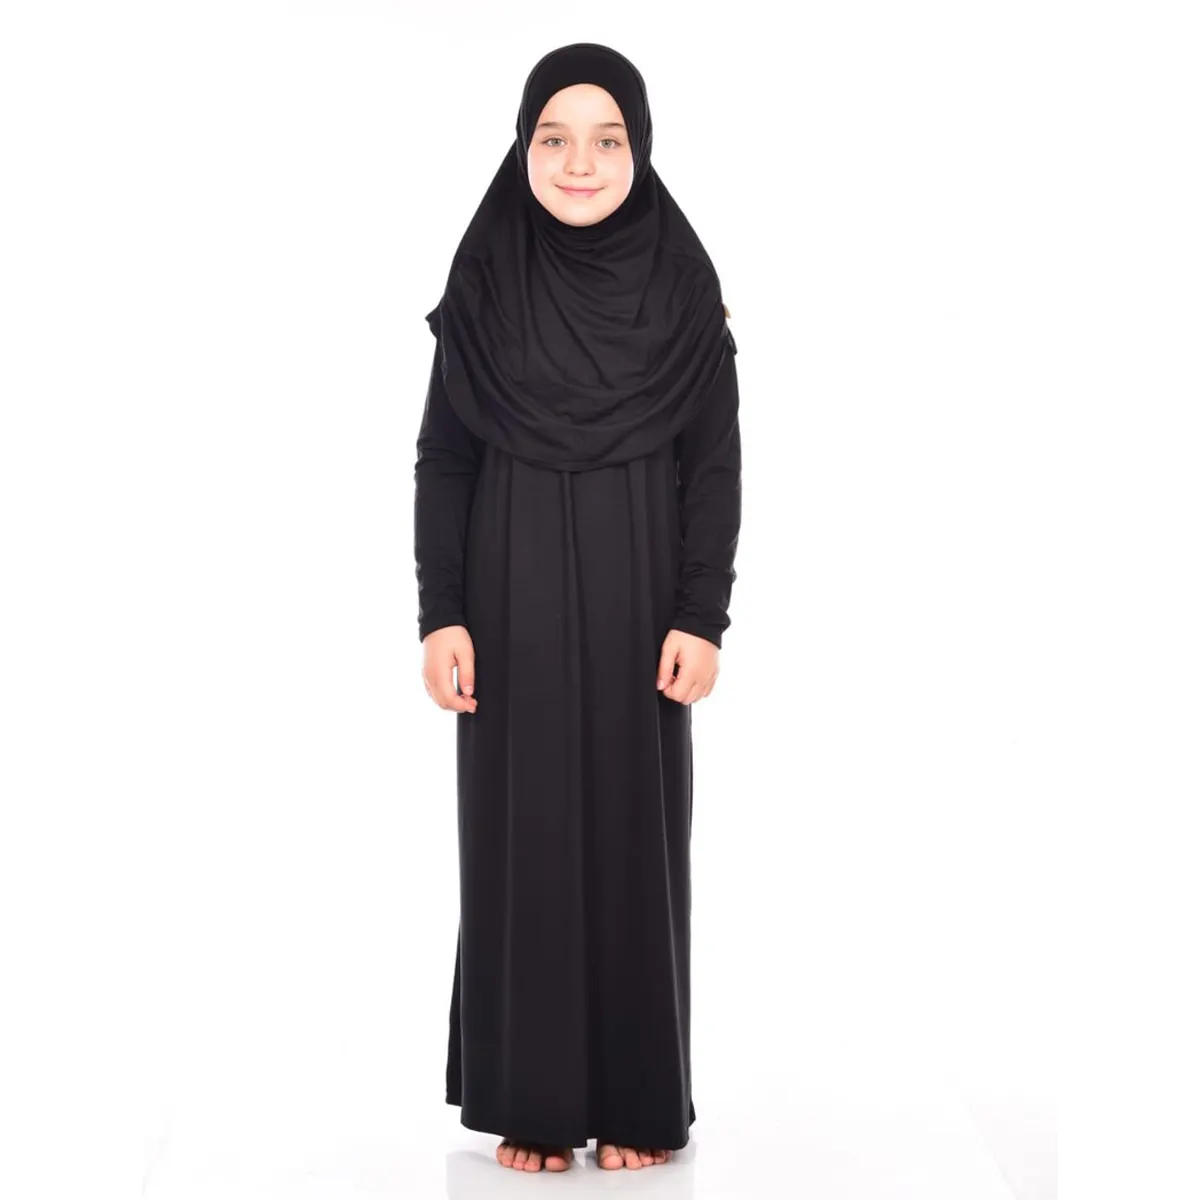 Kızlar için sıcak satış çocuklar müslüman elbise baskılı orta doğu arap çocuk pratik namaz elbise 8-12 yaşında siyah